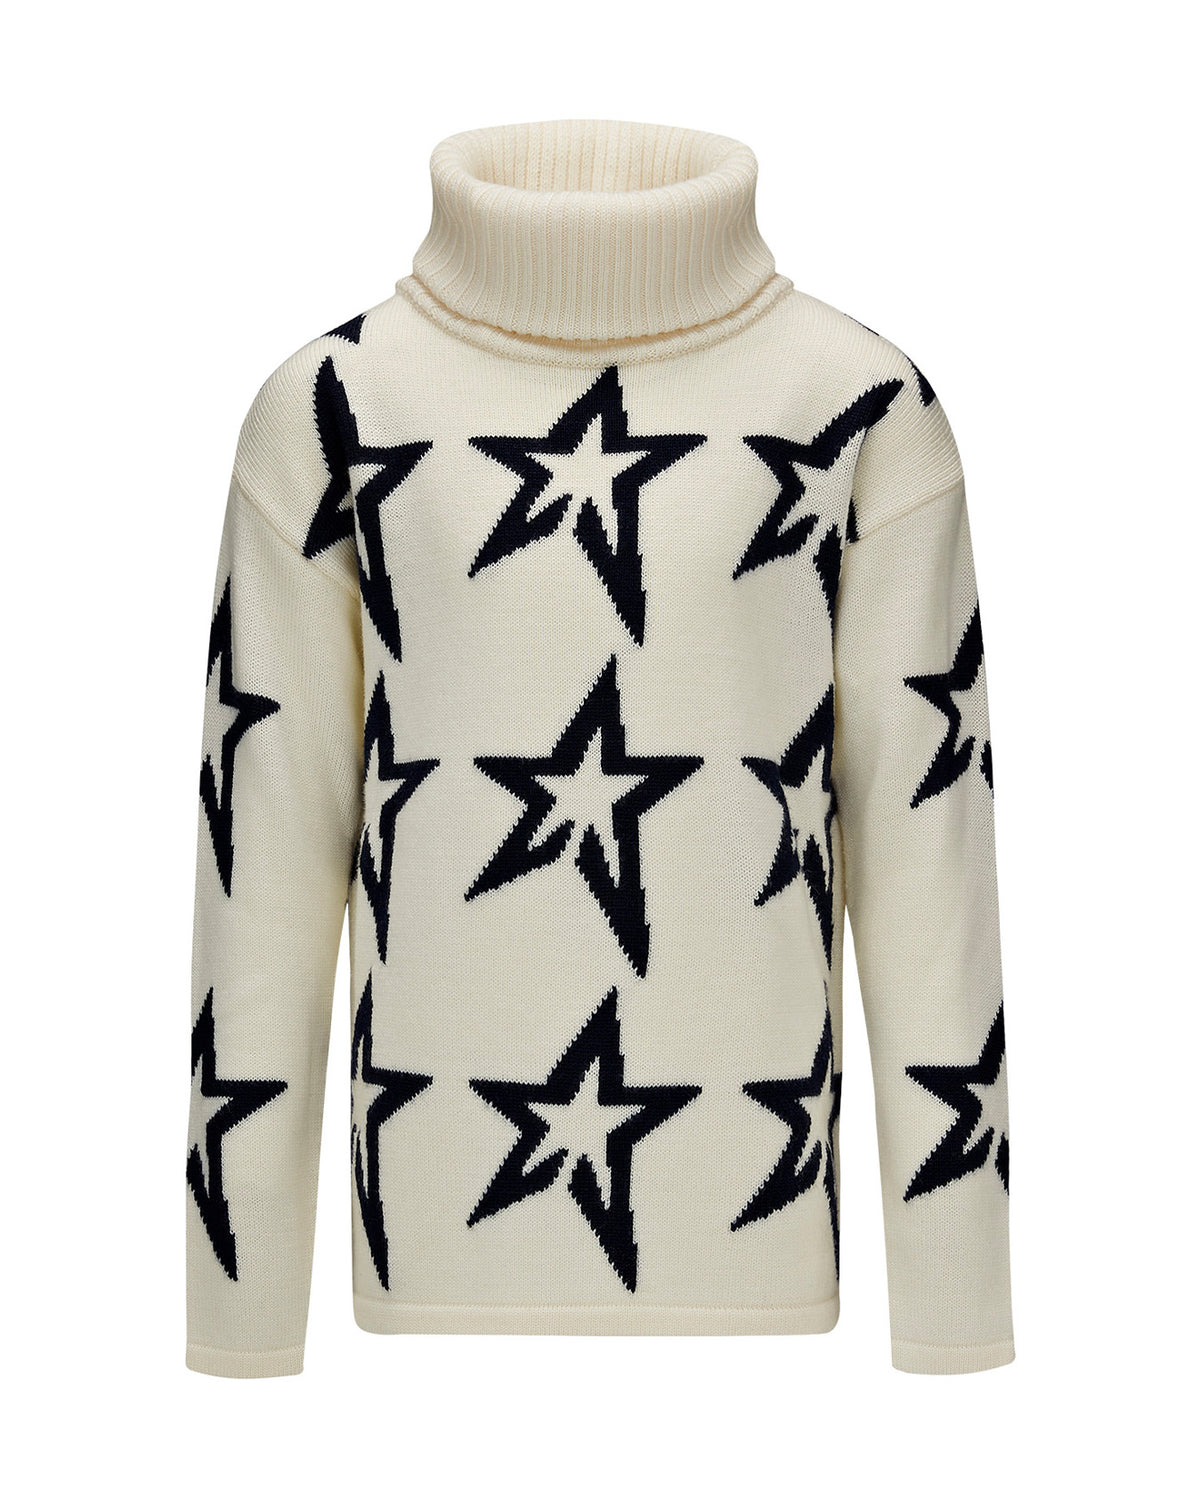 Stardust Sweater - Snow White/Navy Star